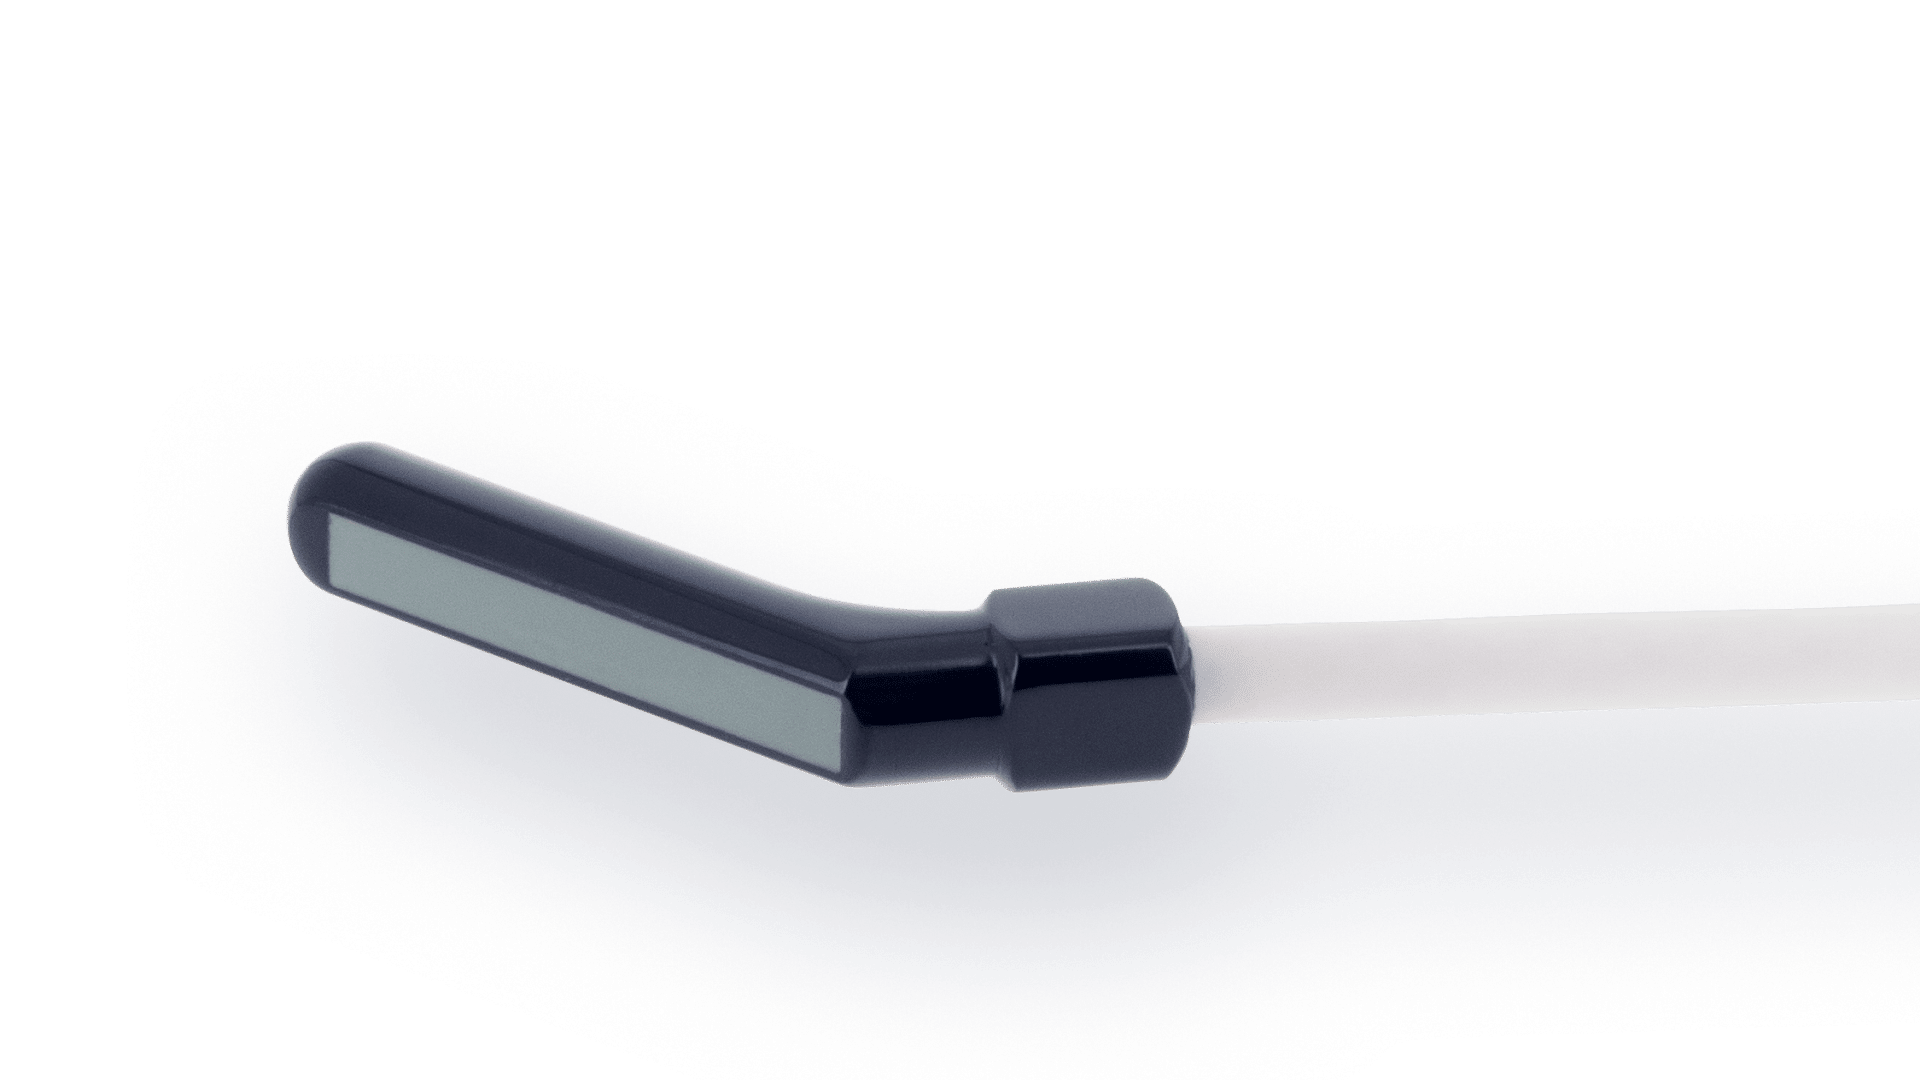 Hockey-stick Linear Array – 10.0MHz – 128 elts